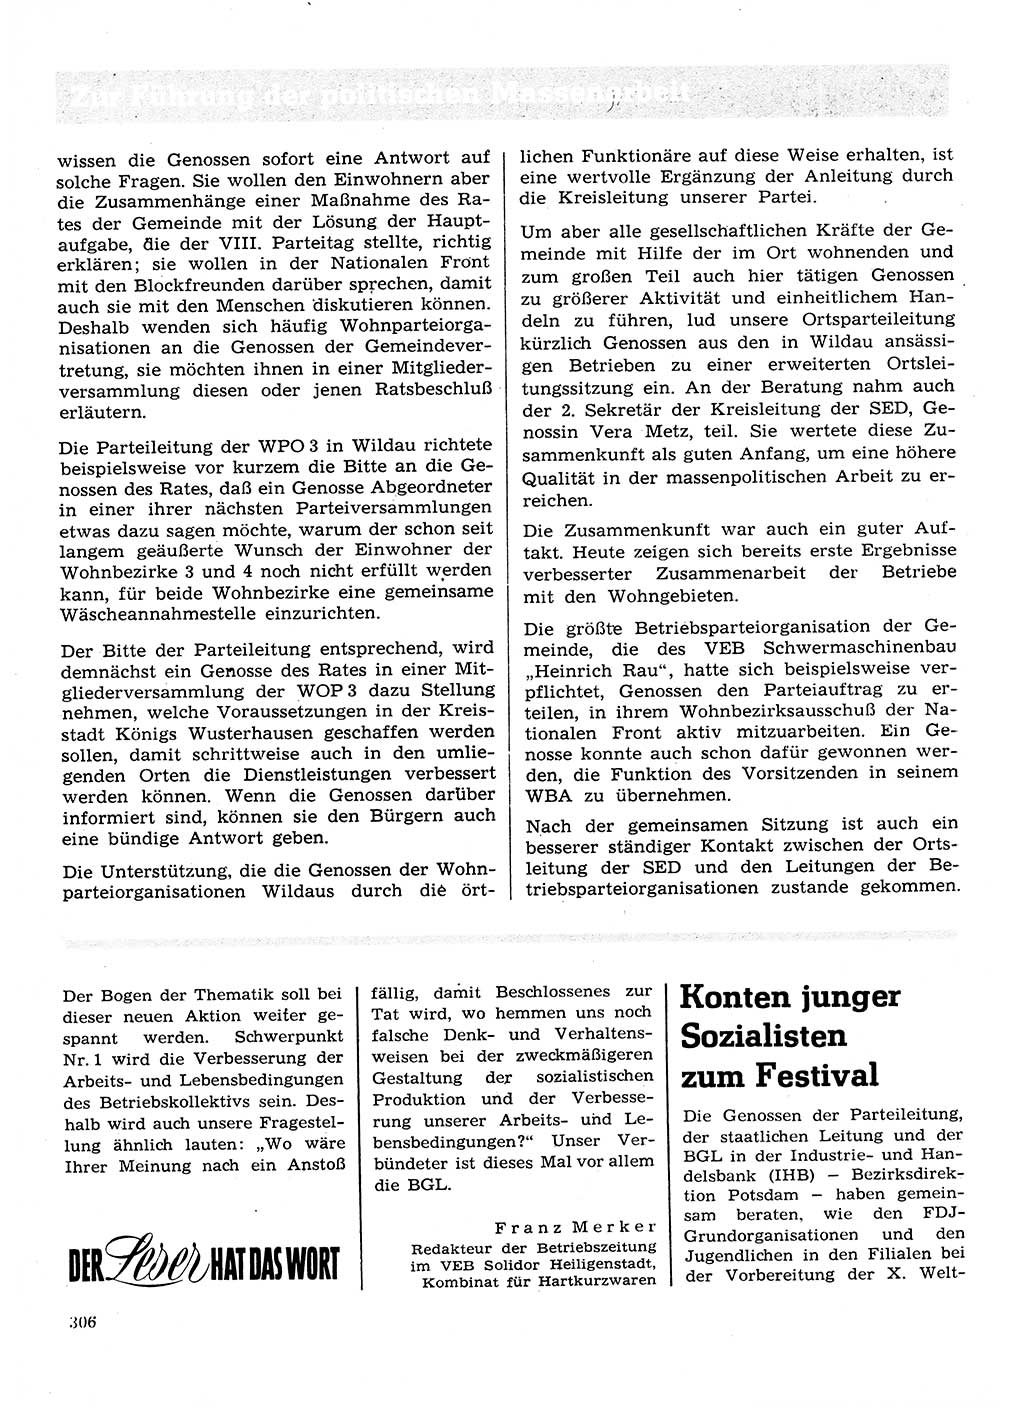 Neuer Weg (NW), Organ des Zentralkomitees (ZK) der SED (Sozialistische Einheitspartei Deutschlands) für Fragen des Parteilebens, 28. Jahrgang [Deutsche Demokratische Republik (DDR)] 1973, Seite 306 (NW ZK SED DDR 1973, S. 306)